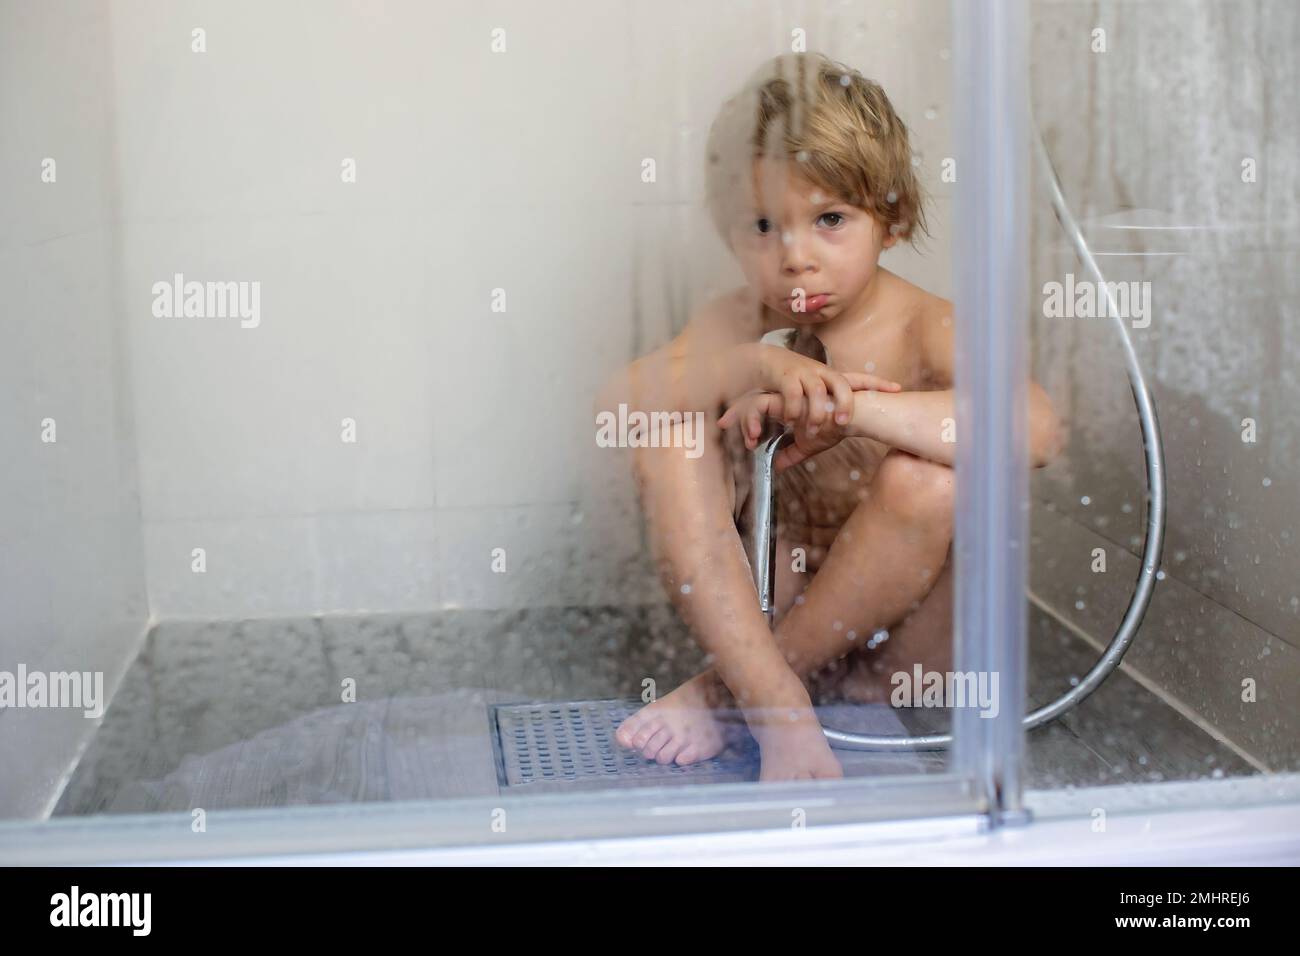 Immagini Stock - Dolce Bambino Sotto Un Asciugamano Bianco Dopo Il Bagno.  Sanità, Pediatria.. Image 97856202